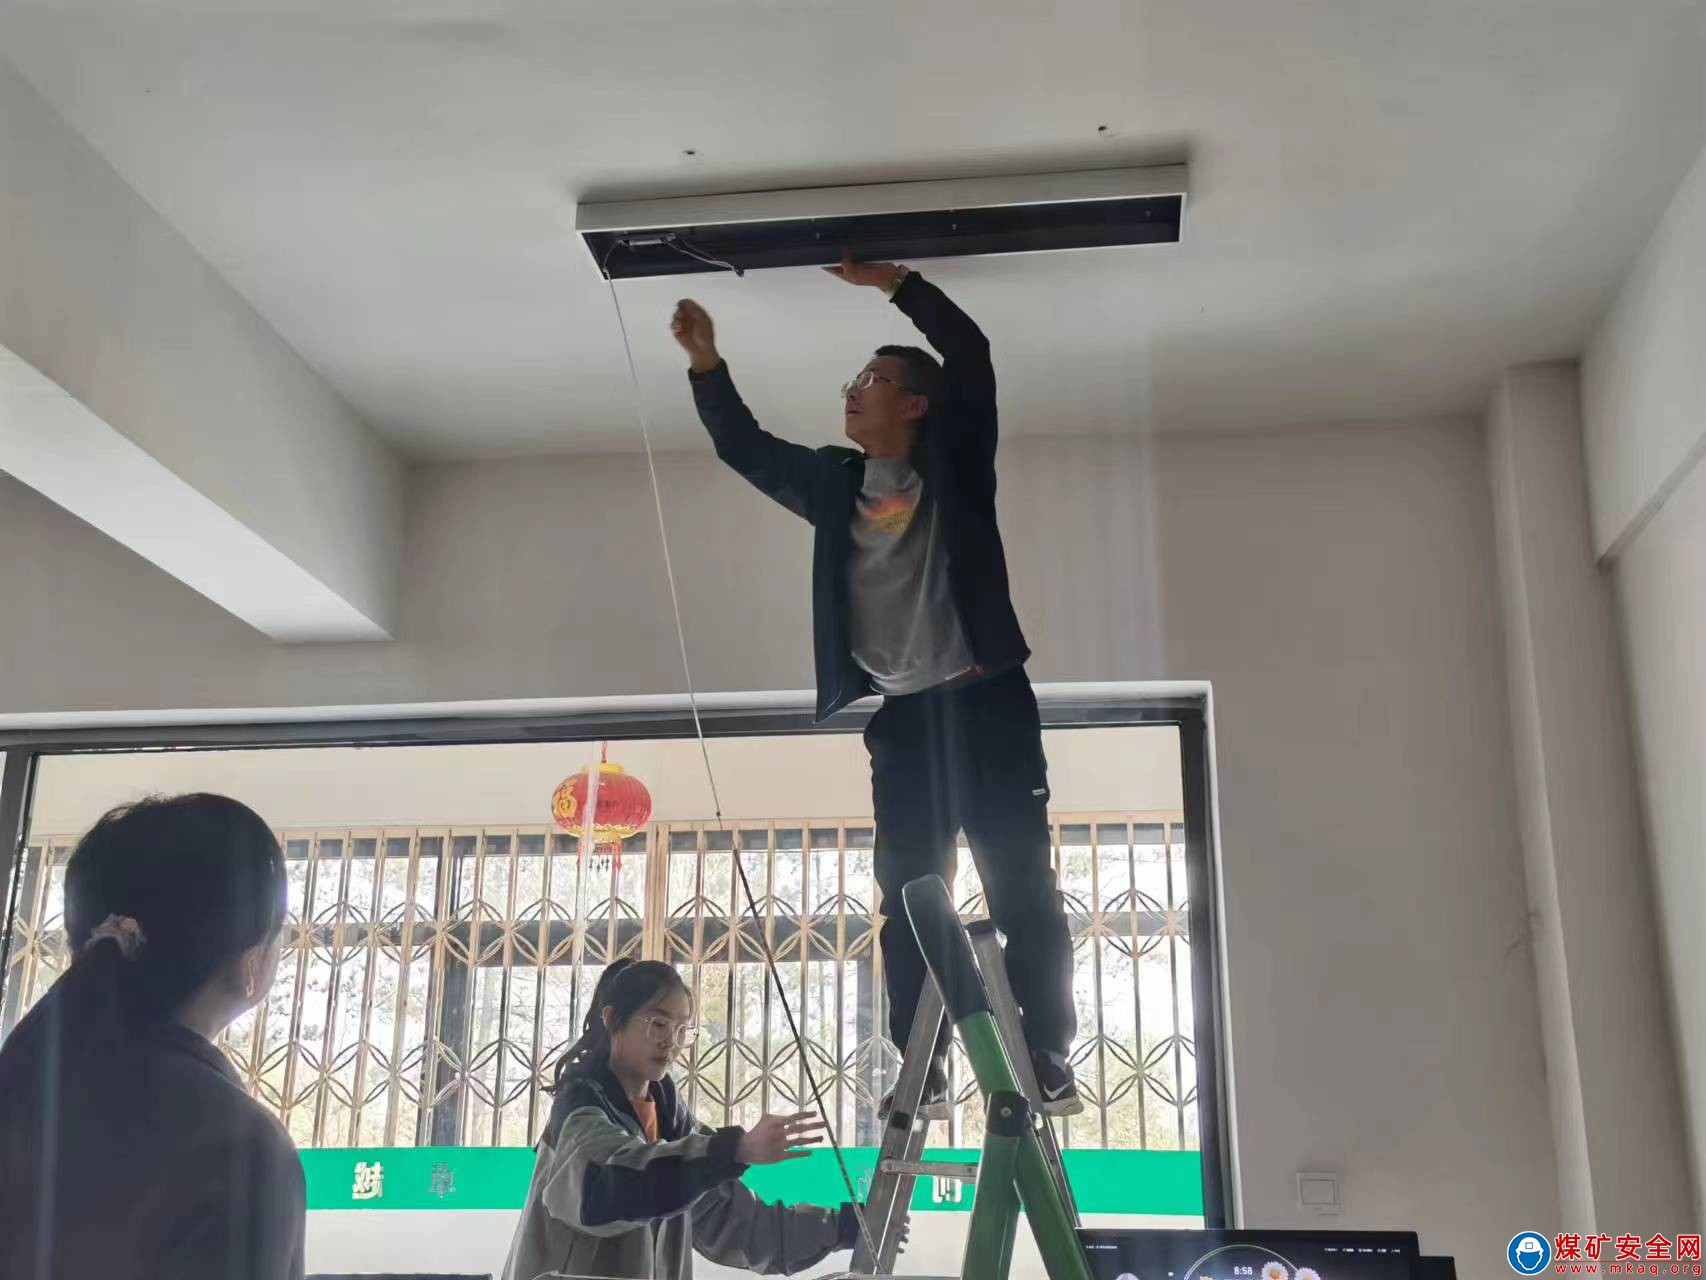 朔州煤電鐵路管理分公司更換照明燈具 改善辦公條件